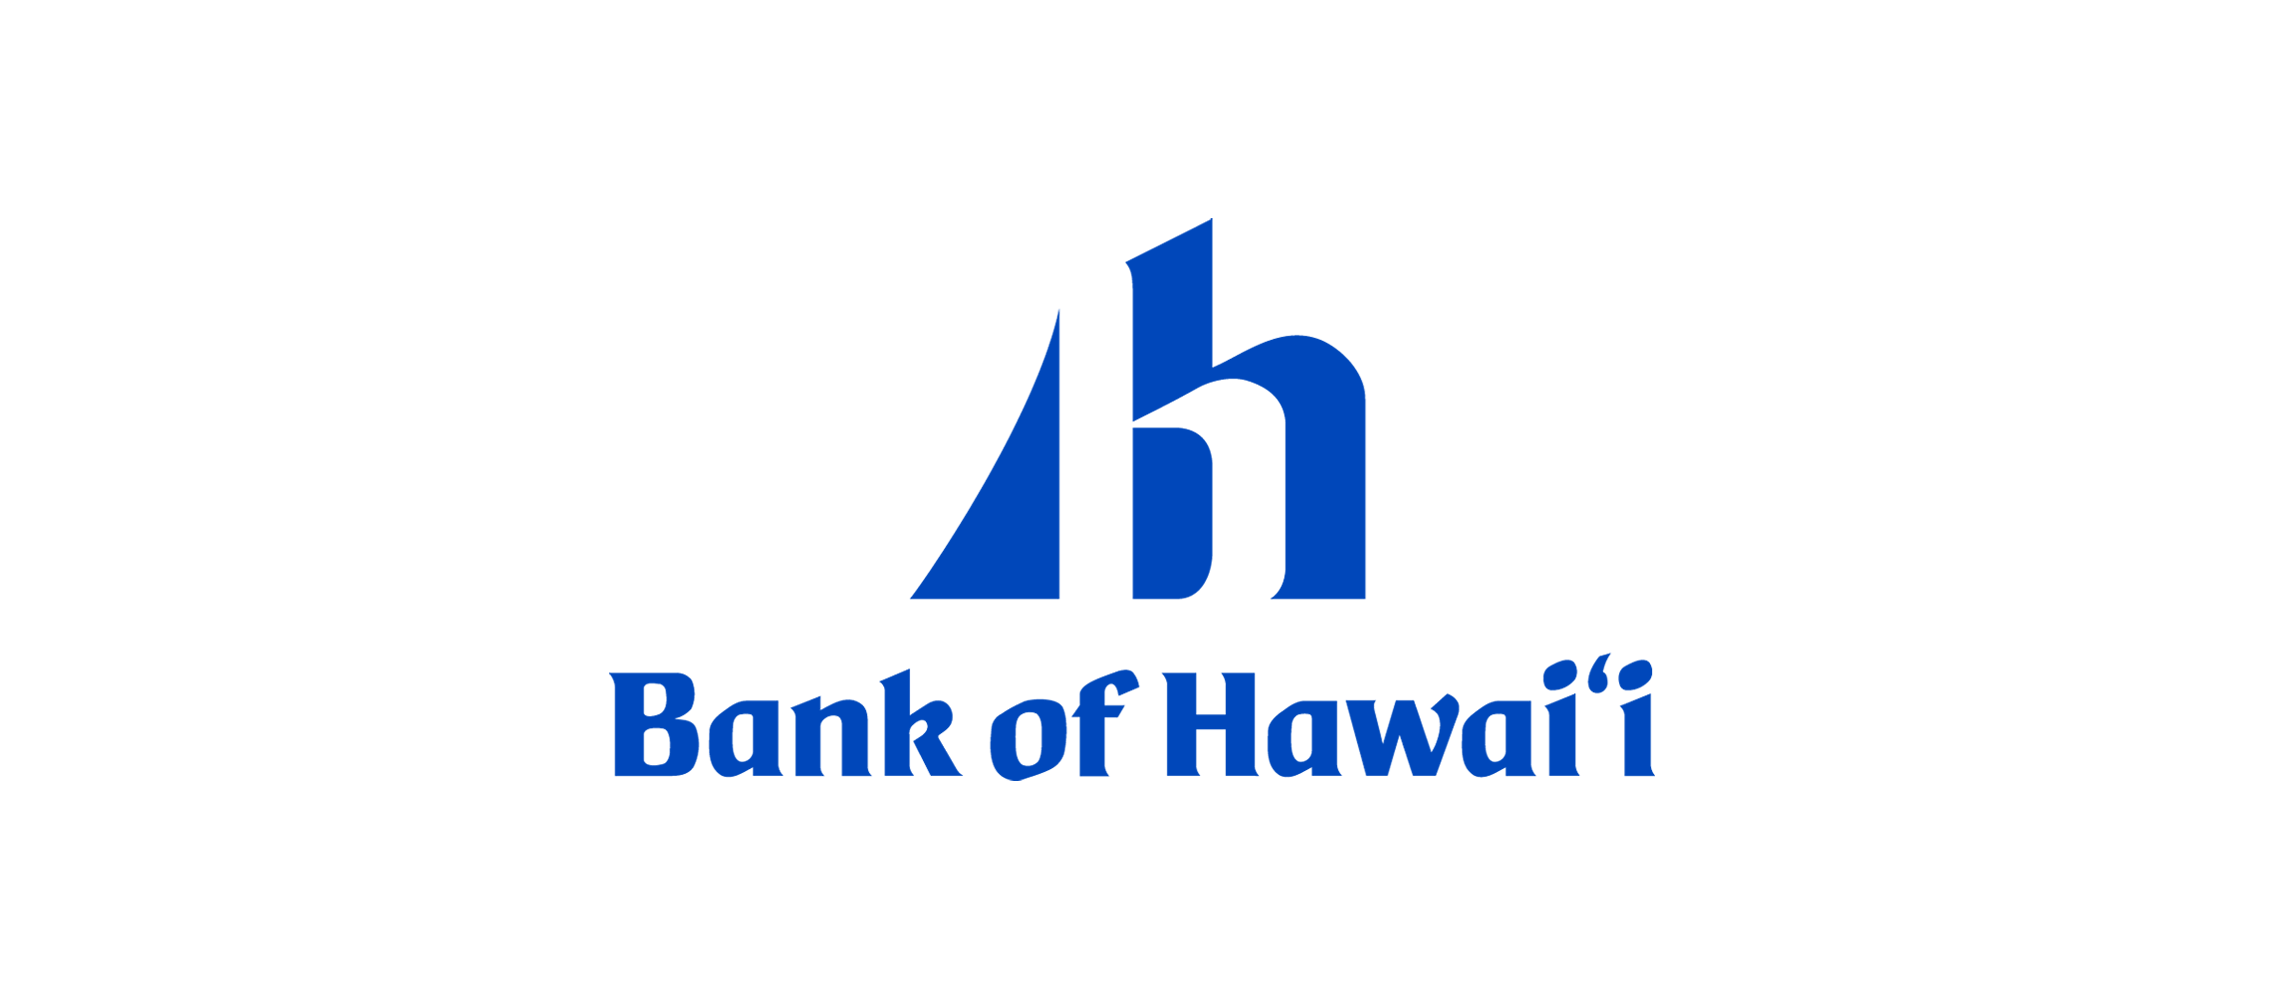 Bank of Hawaii Named Best Big Bank in Hawaii by Newsweek ...